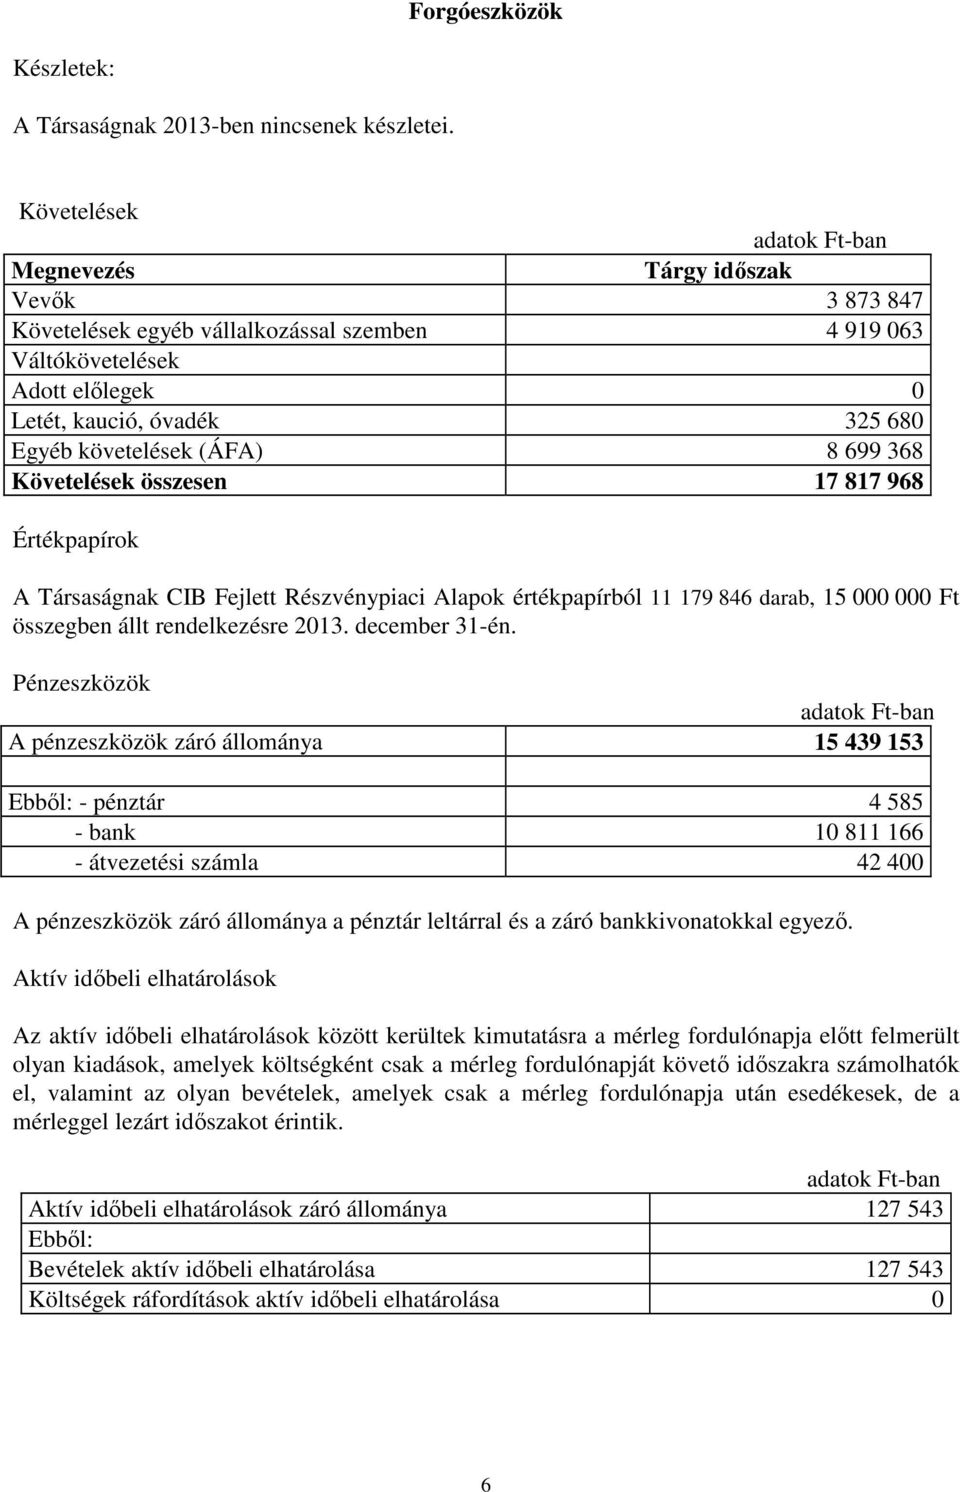 (ÁFA) 8 699 368 Követelések összesen 17 817 968 Értékpapírok A Társaságnak CIB Fejlett Részvénypiaci Alapok értékpapírból 11 179 846 darab, 15 000 000 Ft összegben állt rendelkezésre 2013.